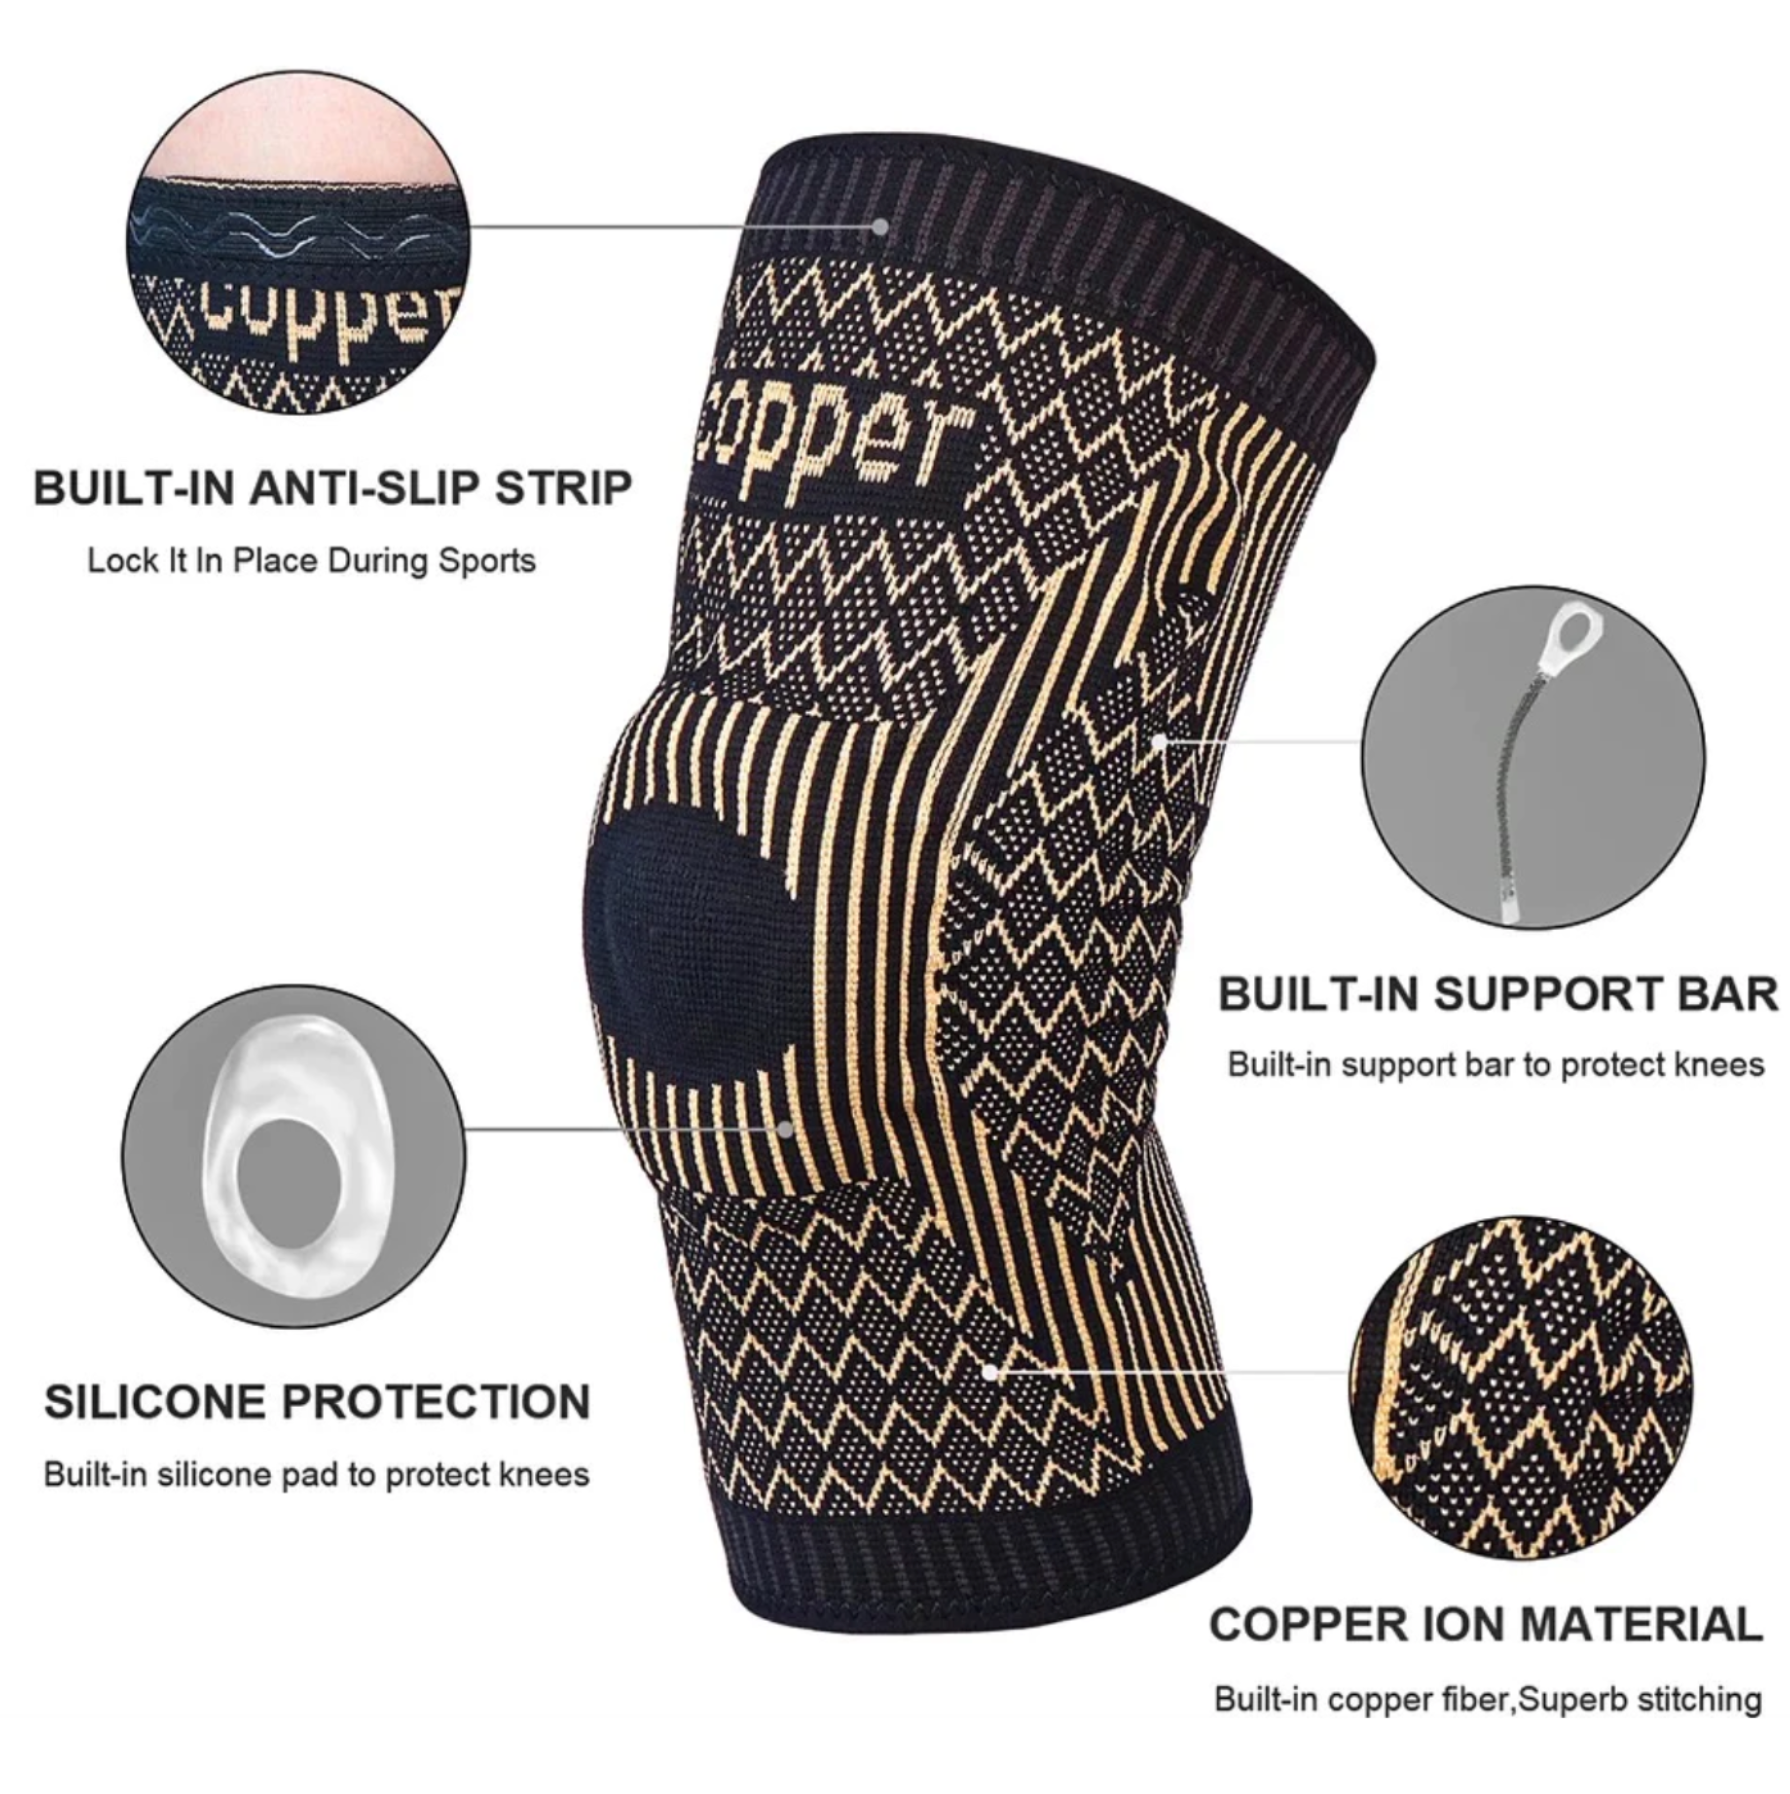 Copper Infused Knee Sleeve – Polara Golf